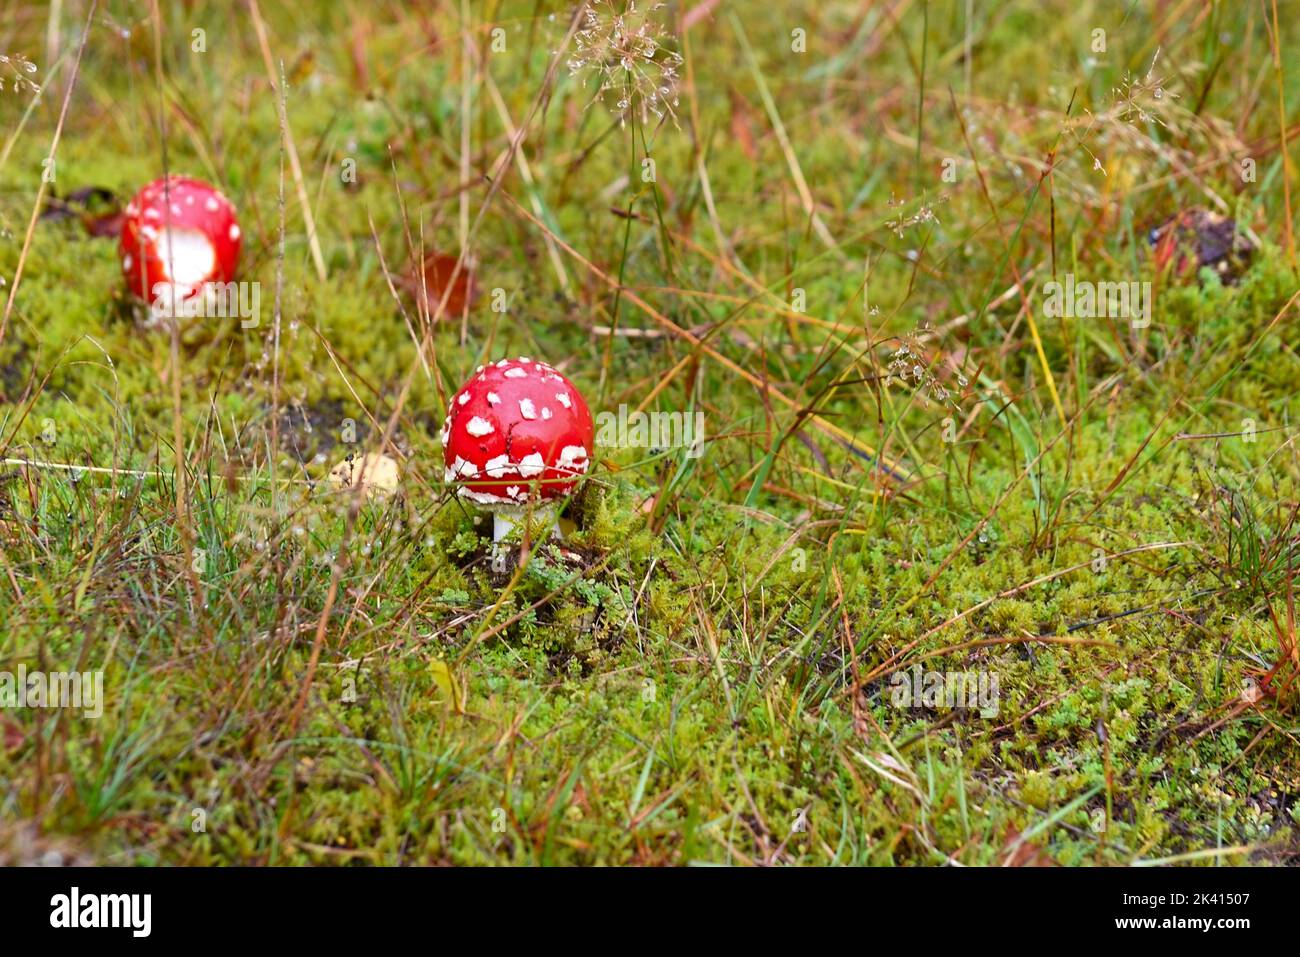 Photo autonome d'un champignon de mouche Amanita muscaria sur le gras vert dans la nature de l'allemagne Banque D'Images